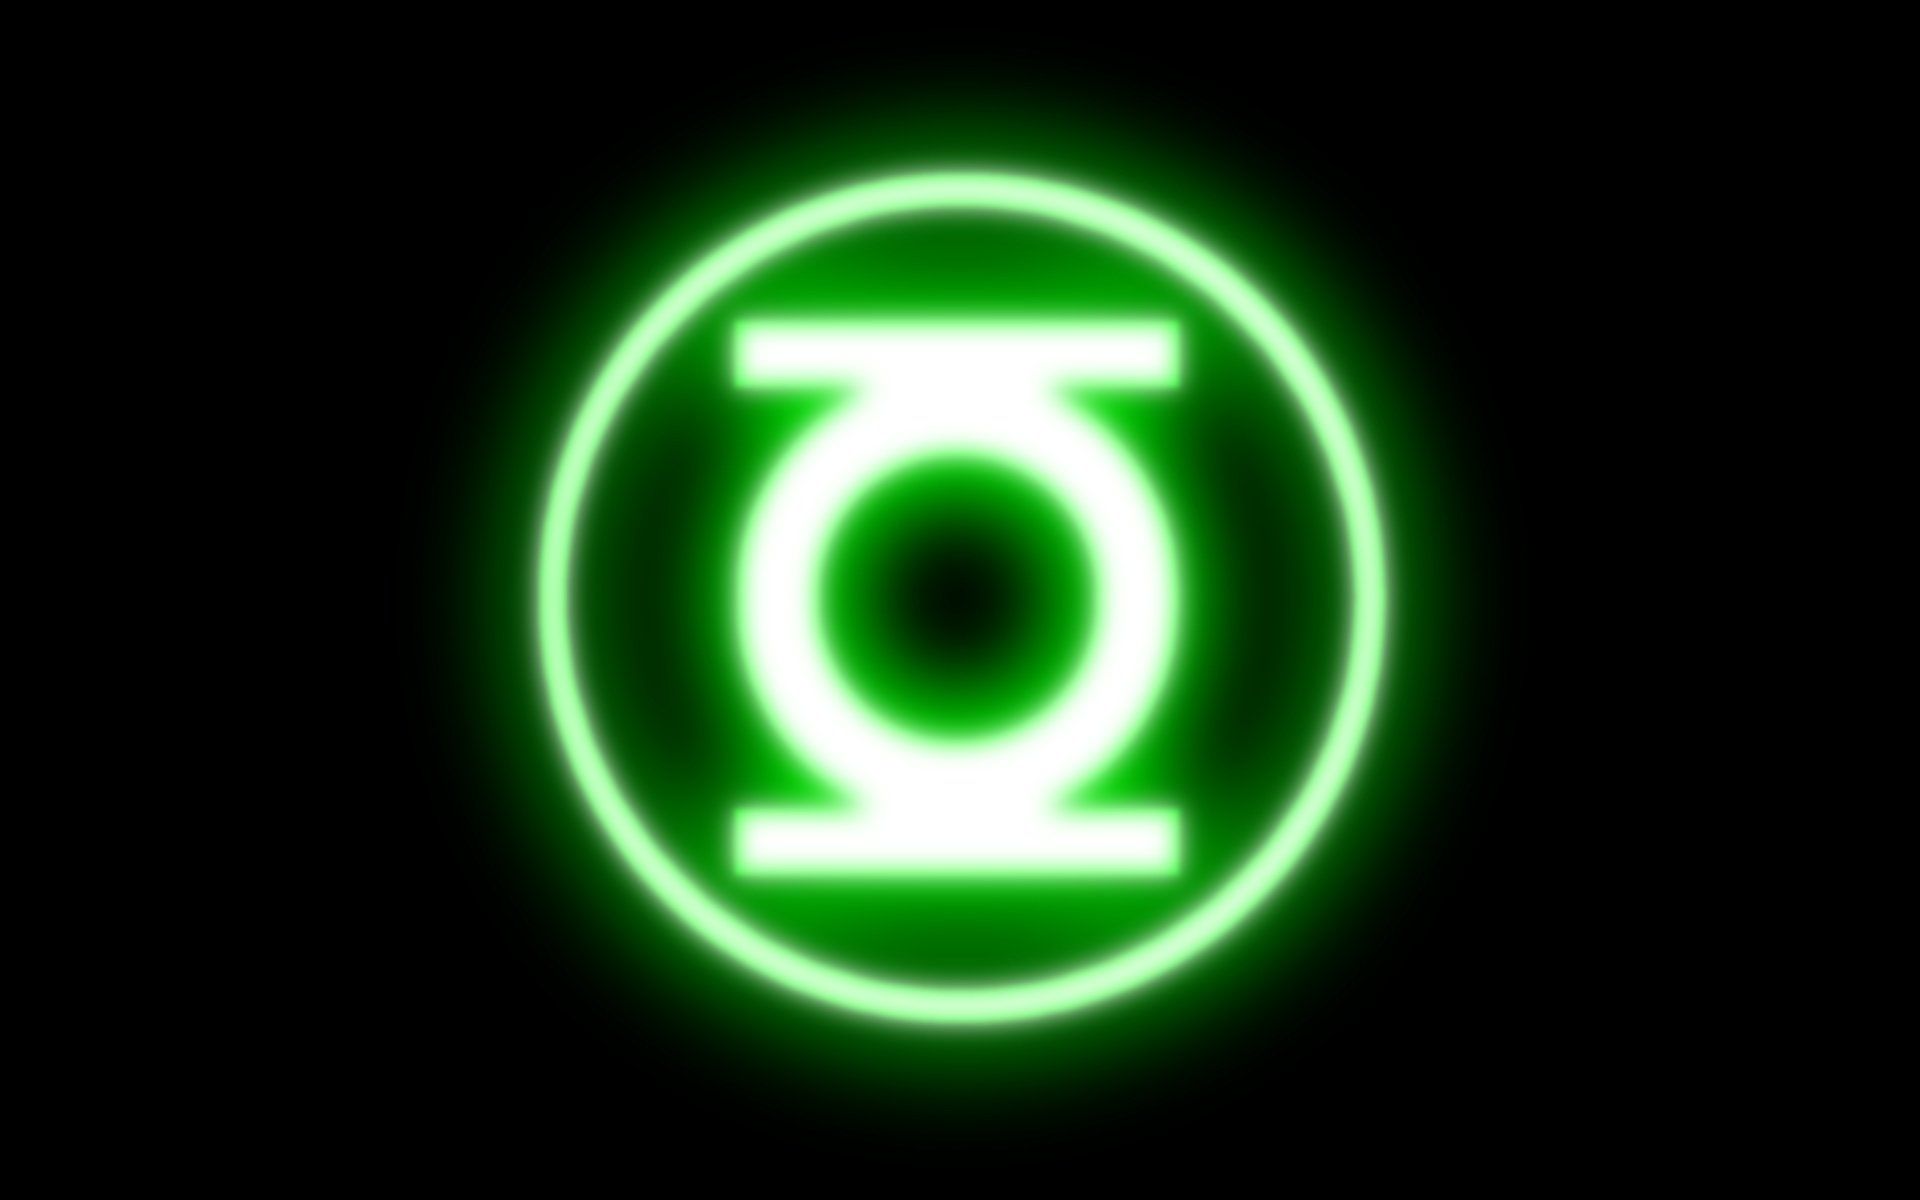 Green Lantern Oath Wallpaper Top